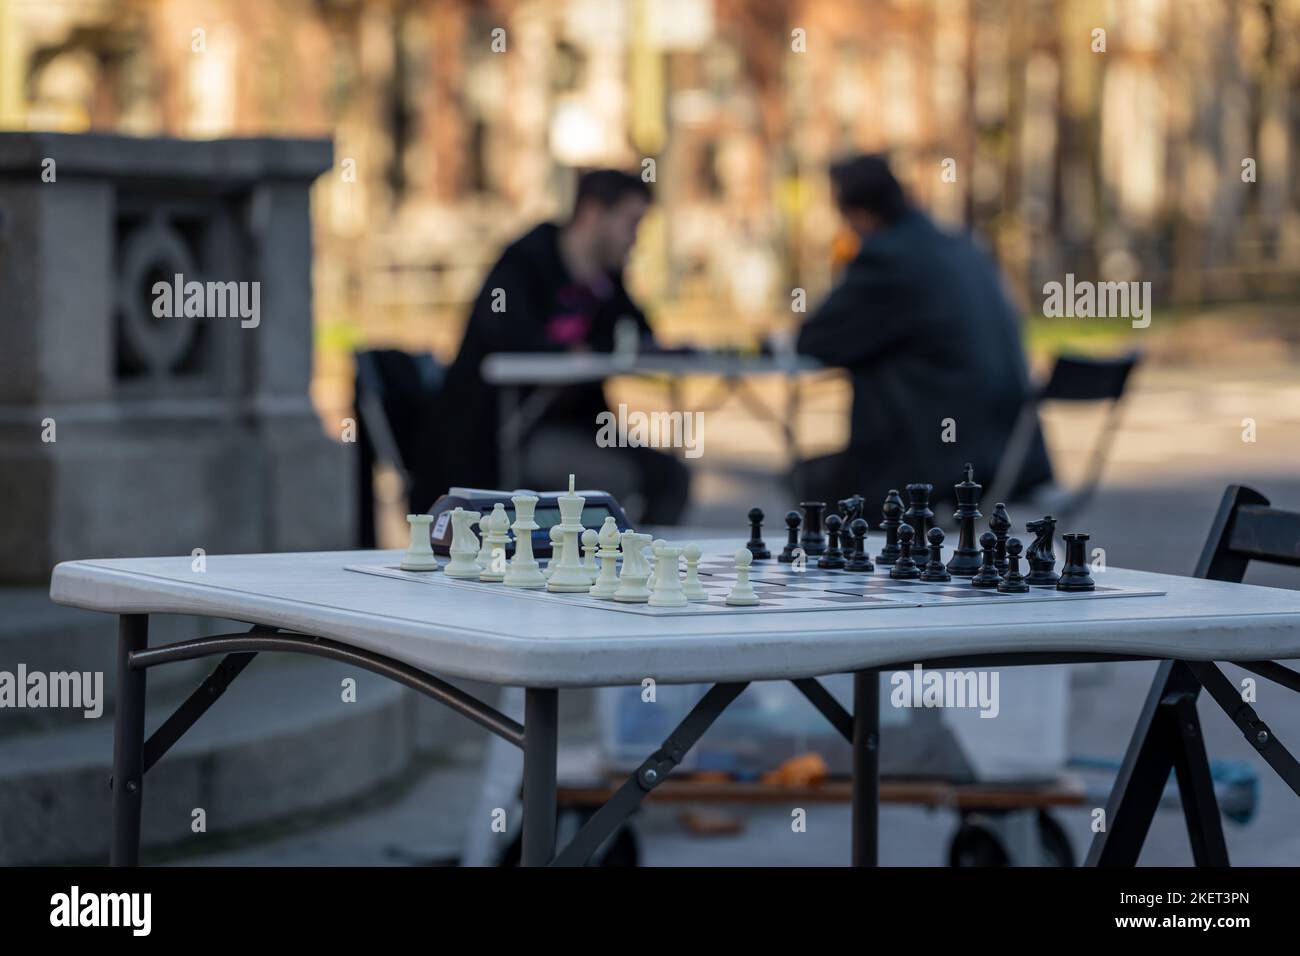 Jeu d'échecs dans la rue prêt pour un match. Silhouettes de joueurs d'échecs à la table dans le fond flou. Banque D'Images